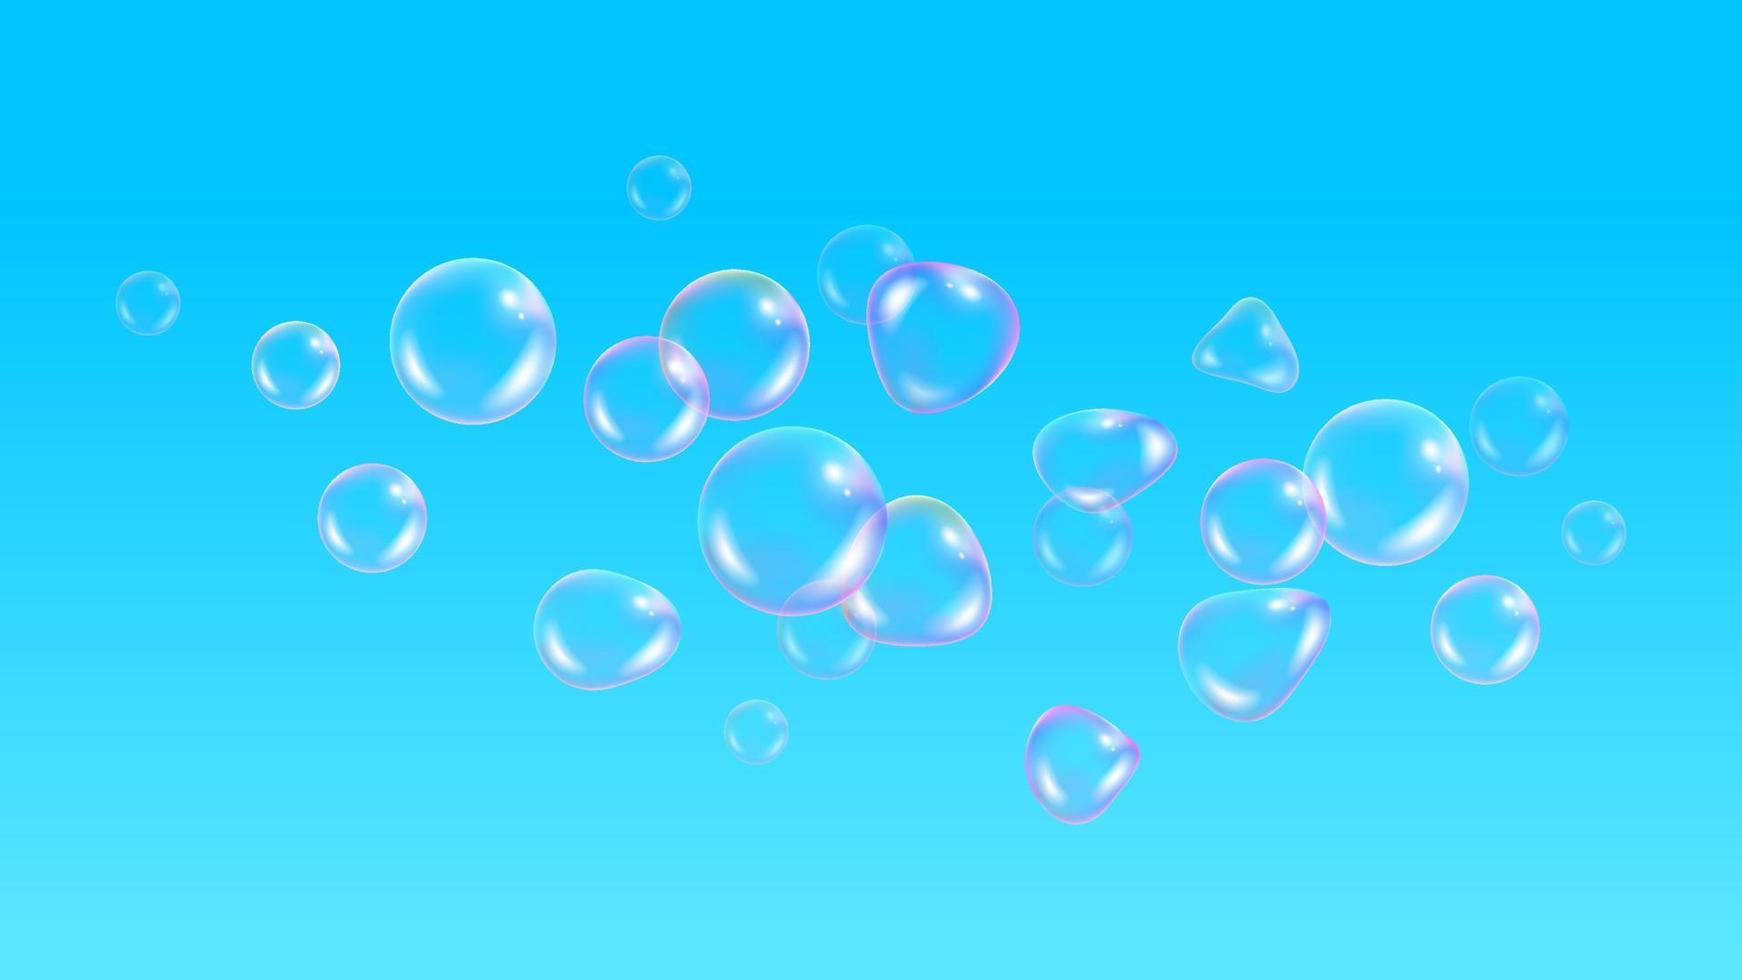 barn bakgrund, med ballonger tapet. realistiska såpbubblor med regnbågsreflektion på blå himmel bakgrund. vektor vatten skum bubblor. färgglada regnbågsglassfär.